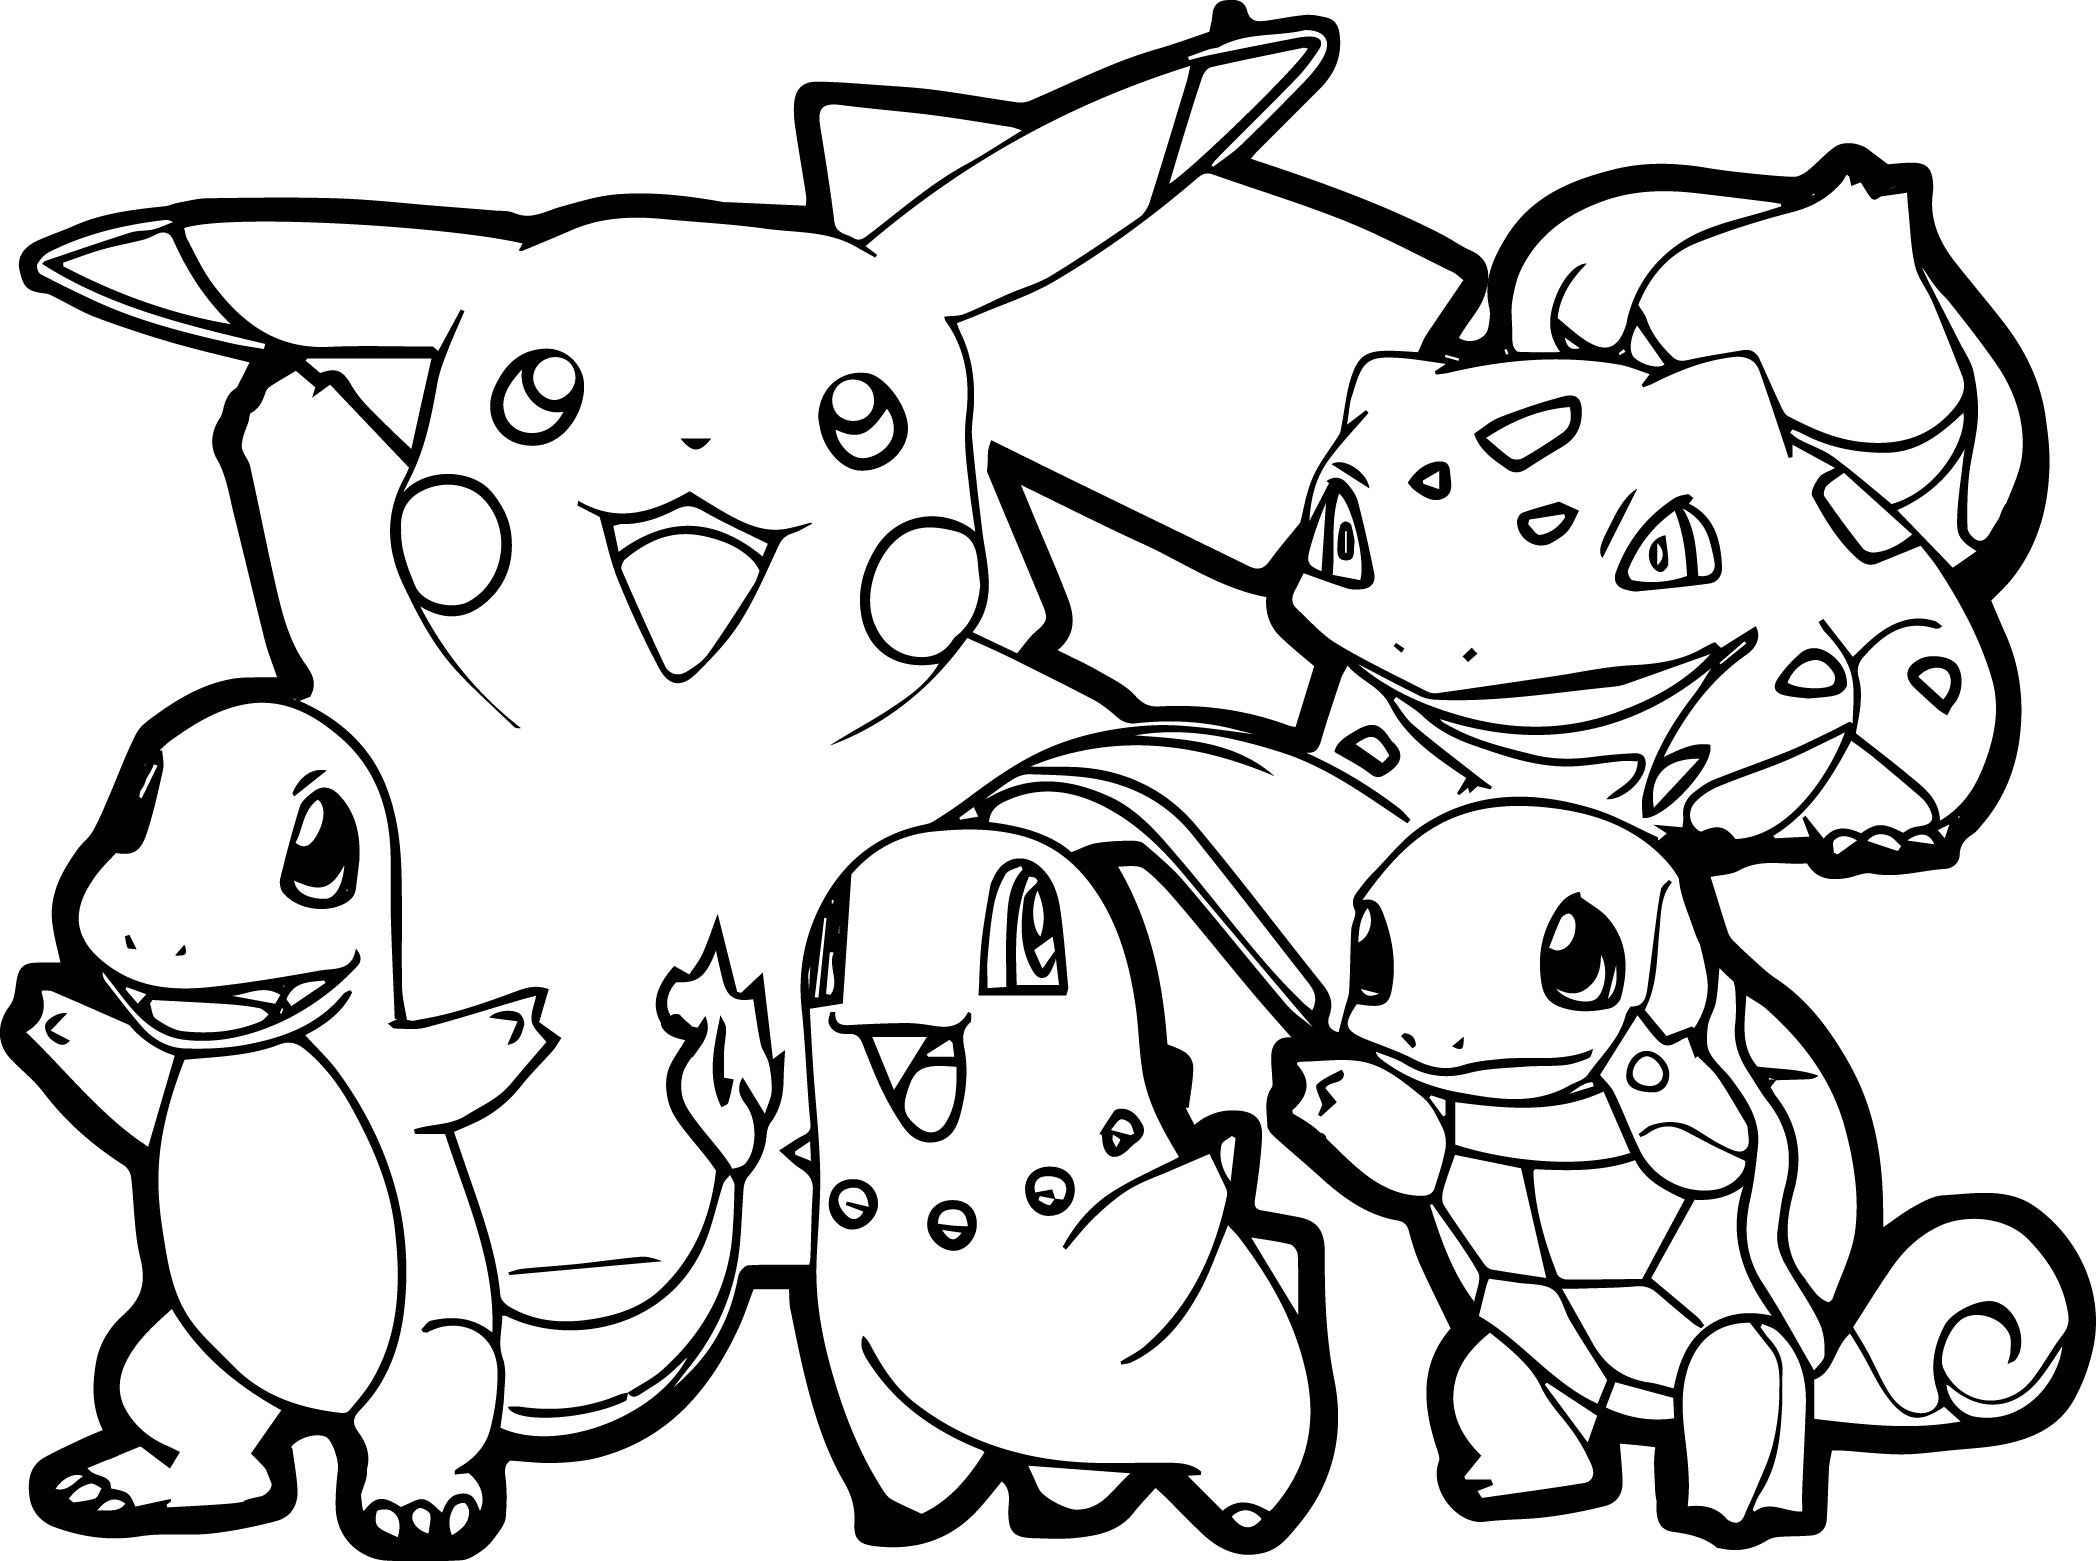 Una sencilla página para colorear de Pikachu y sus amigos, con trazos muy gruesos.